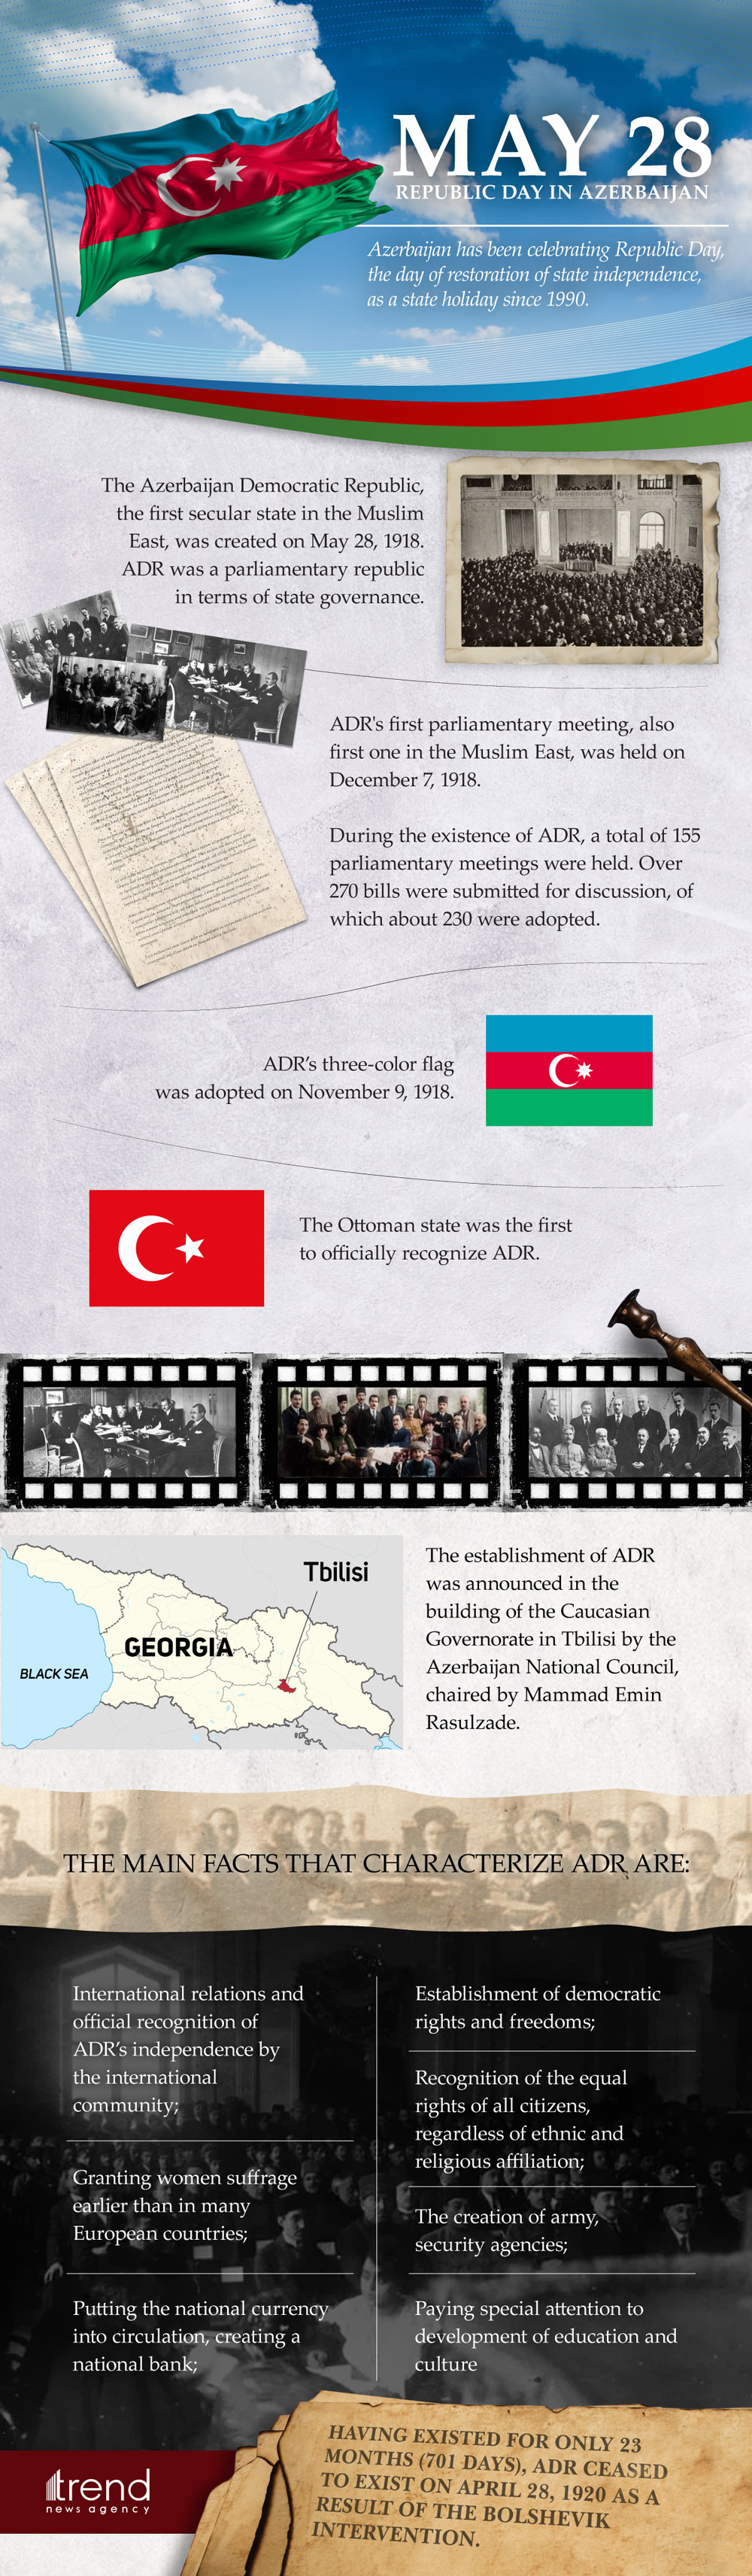 May 28 - Republic Day in Azerbaijan